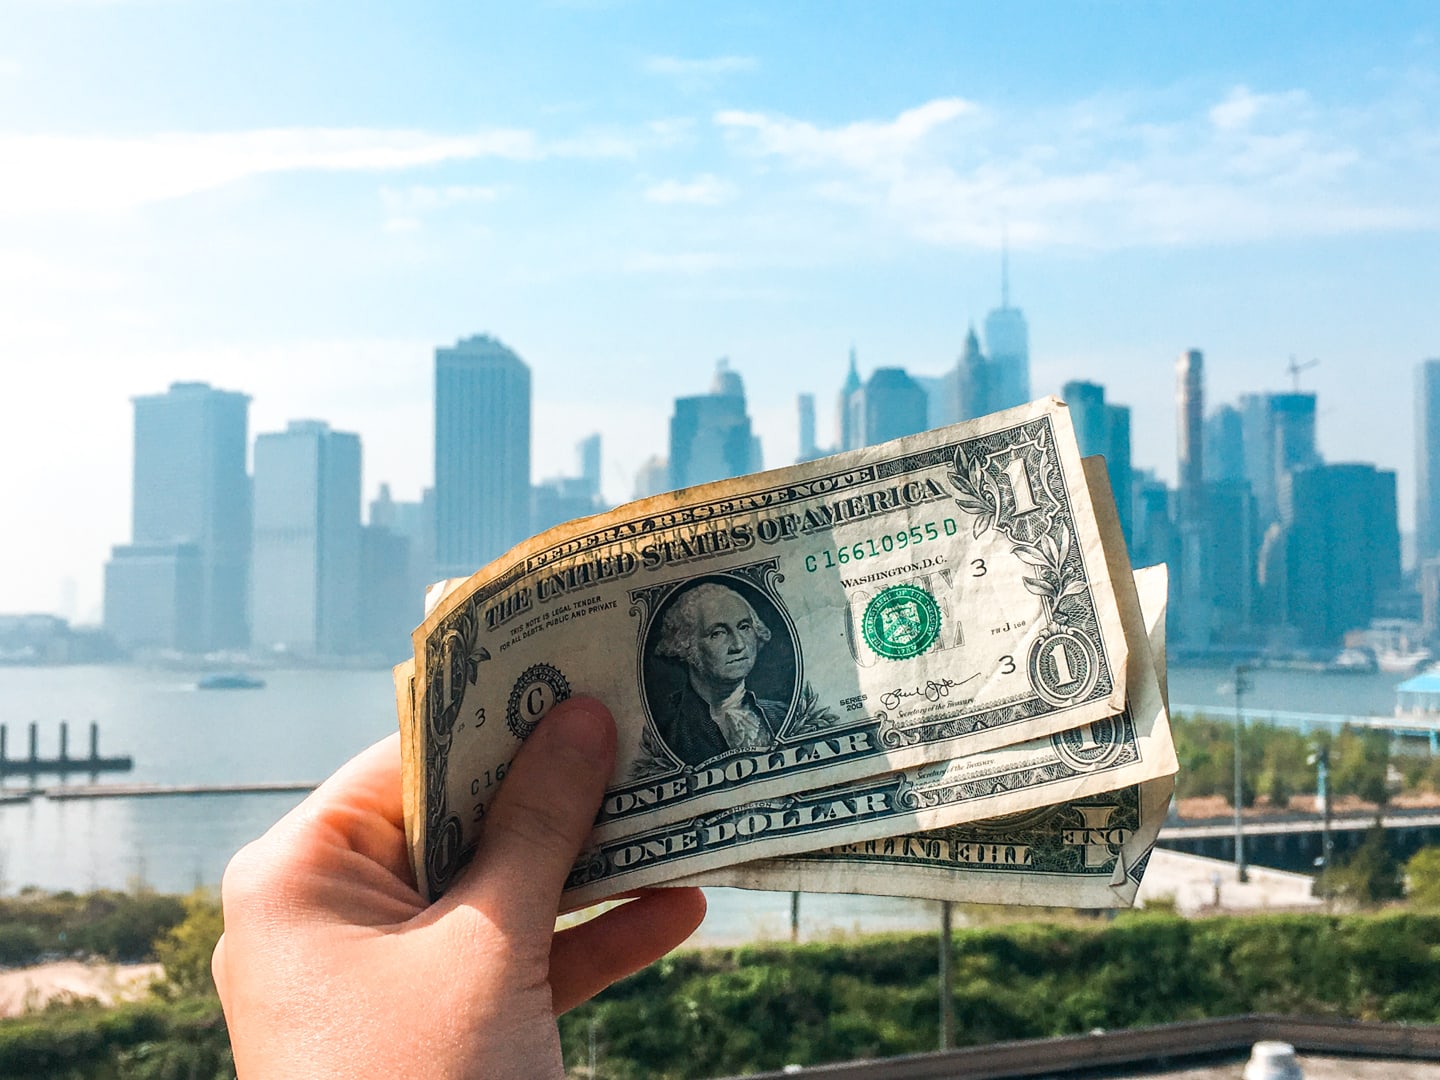 NewYorkDollars46 - Is New York duur? Dit kost een week New York! (+ budget tips)